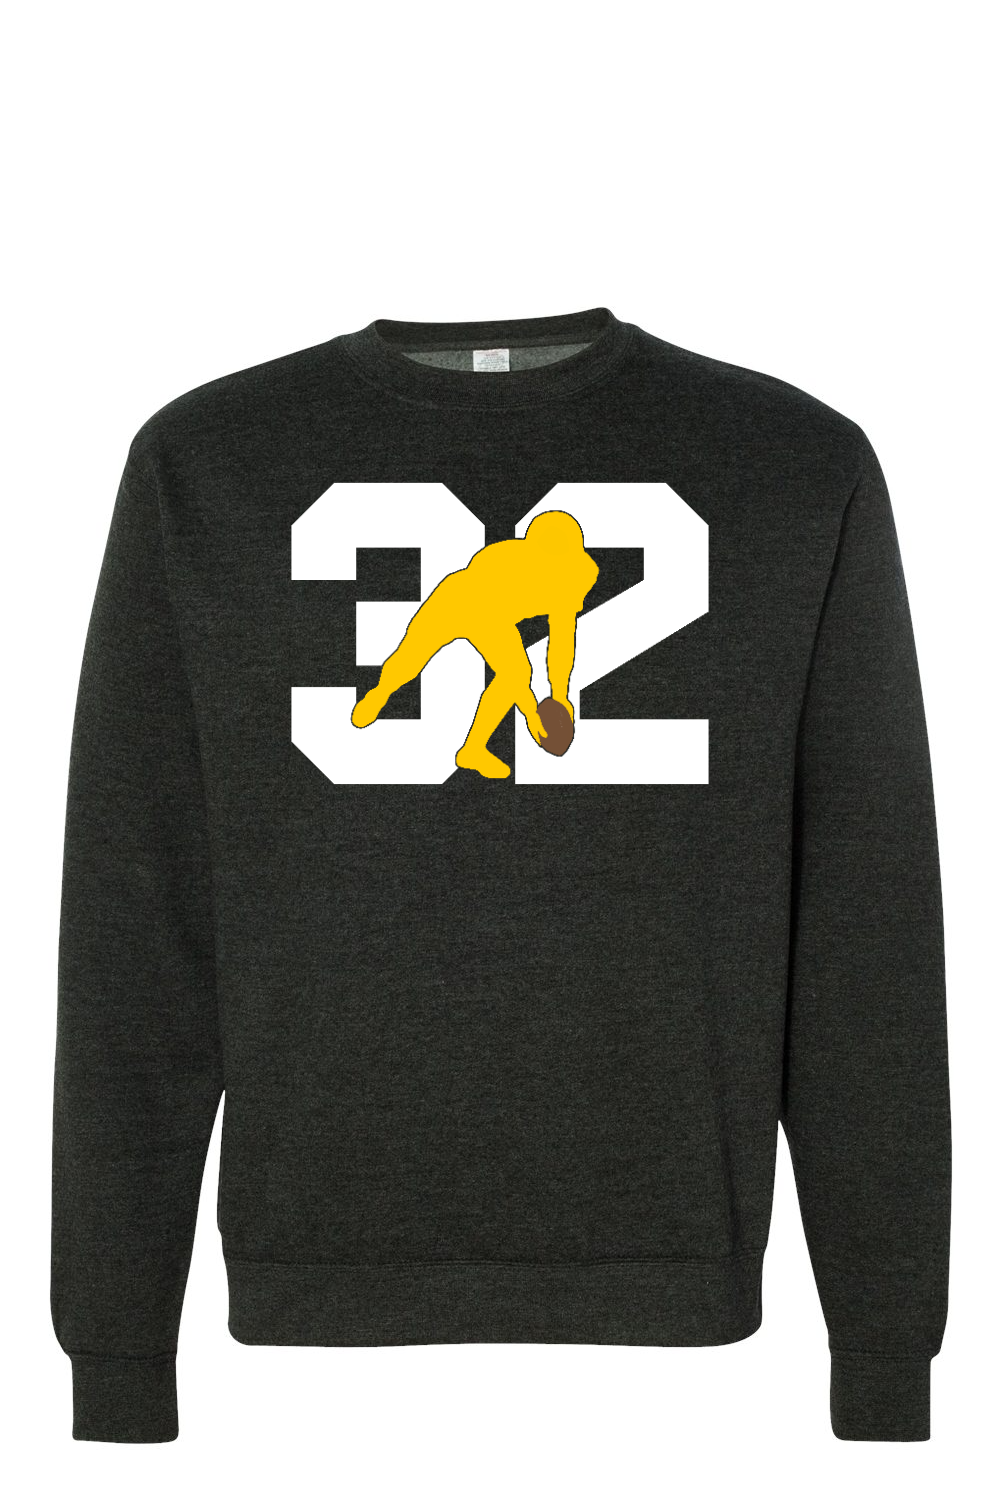 32 Forever - Premium Crewneck Sweatshirt